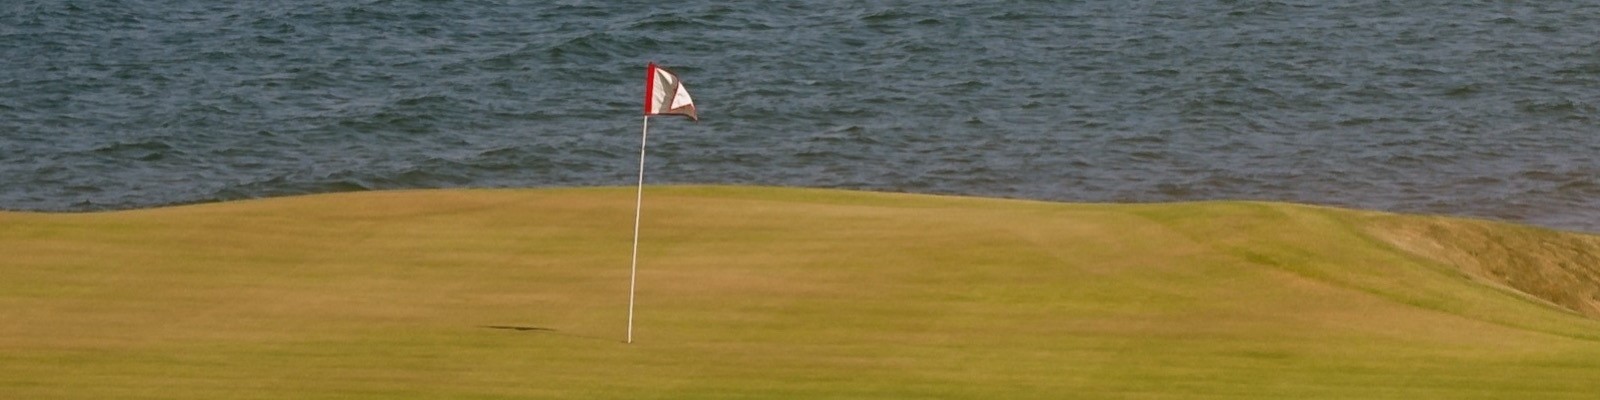 Golf Novia Scotia (Photo by rusty426 / Shutterstock.com)